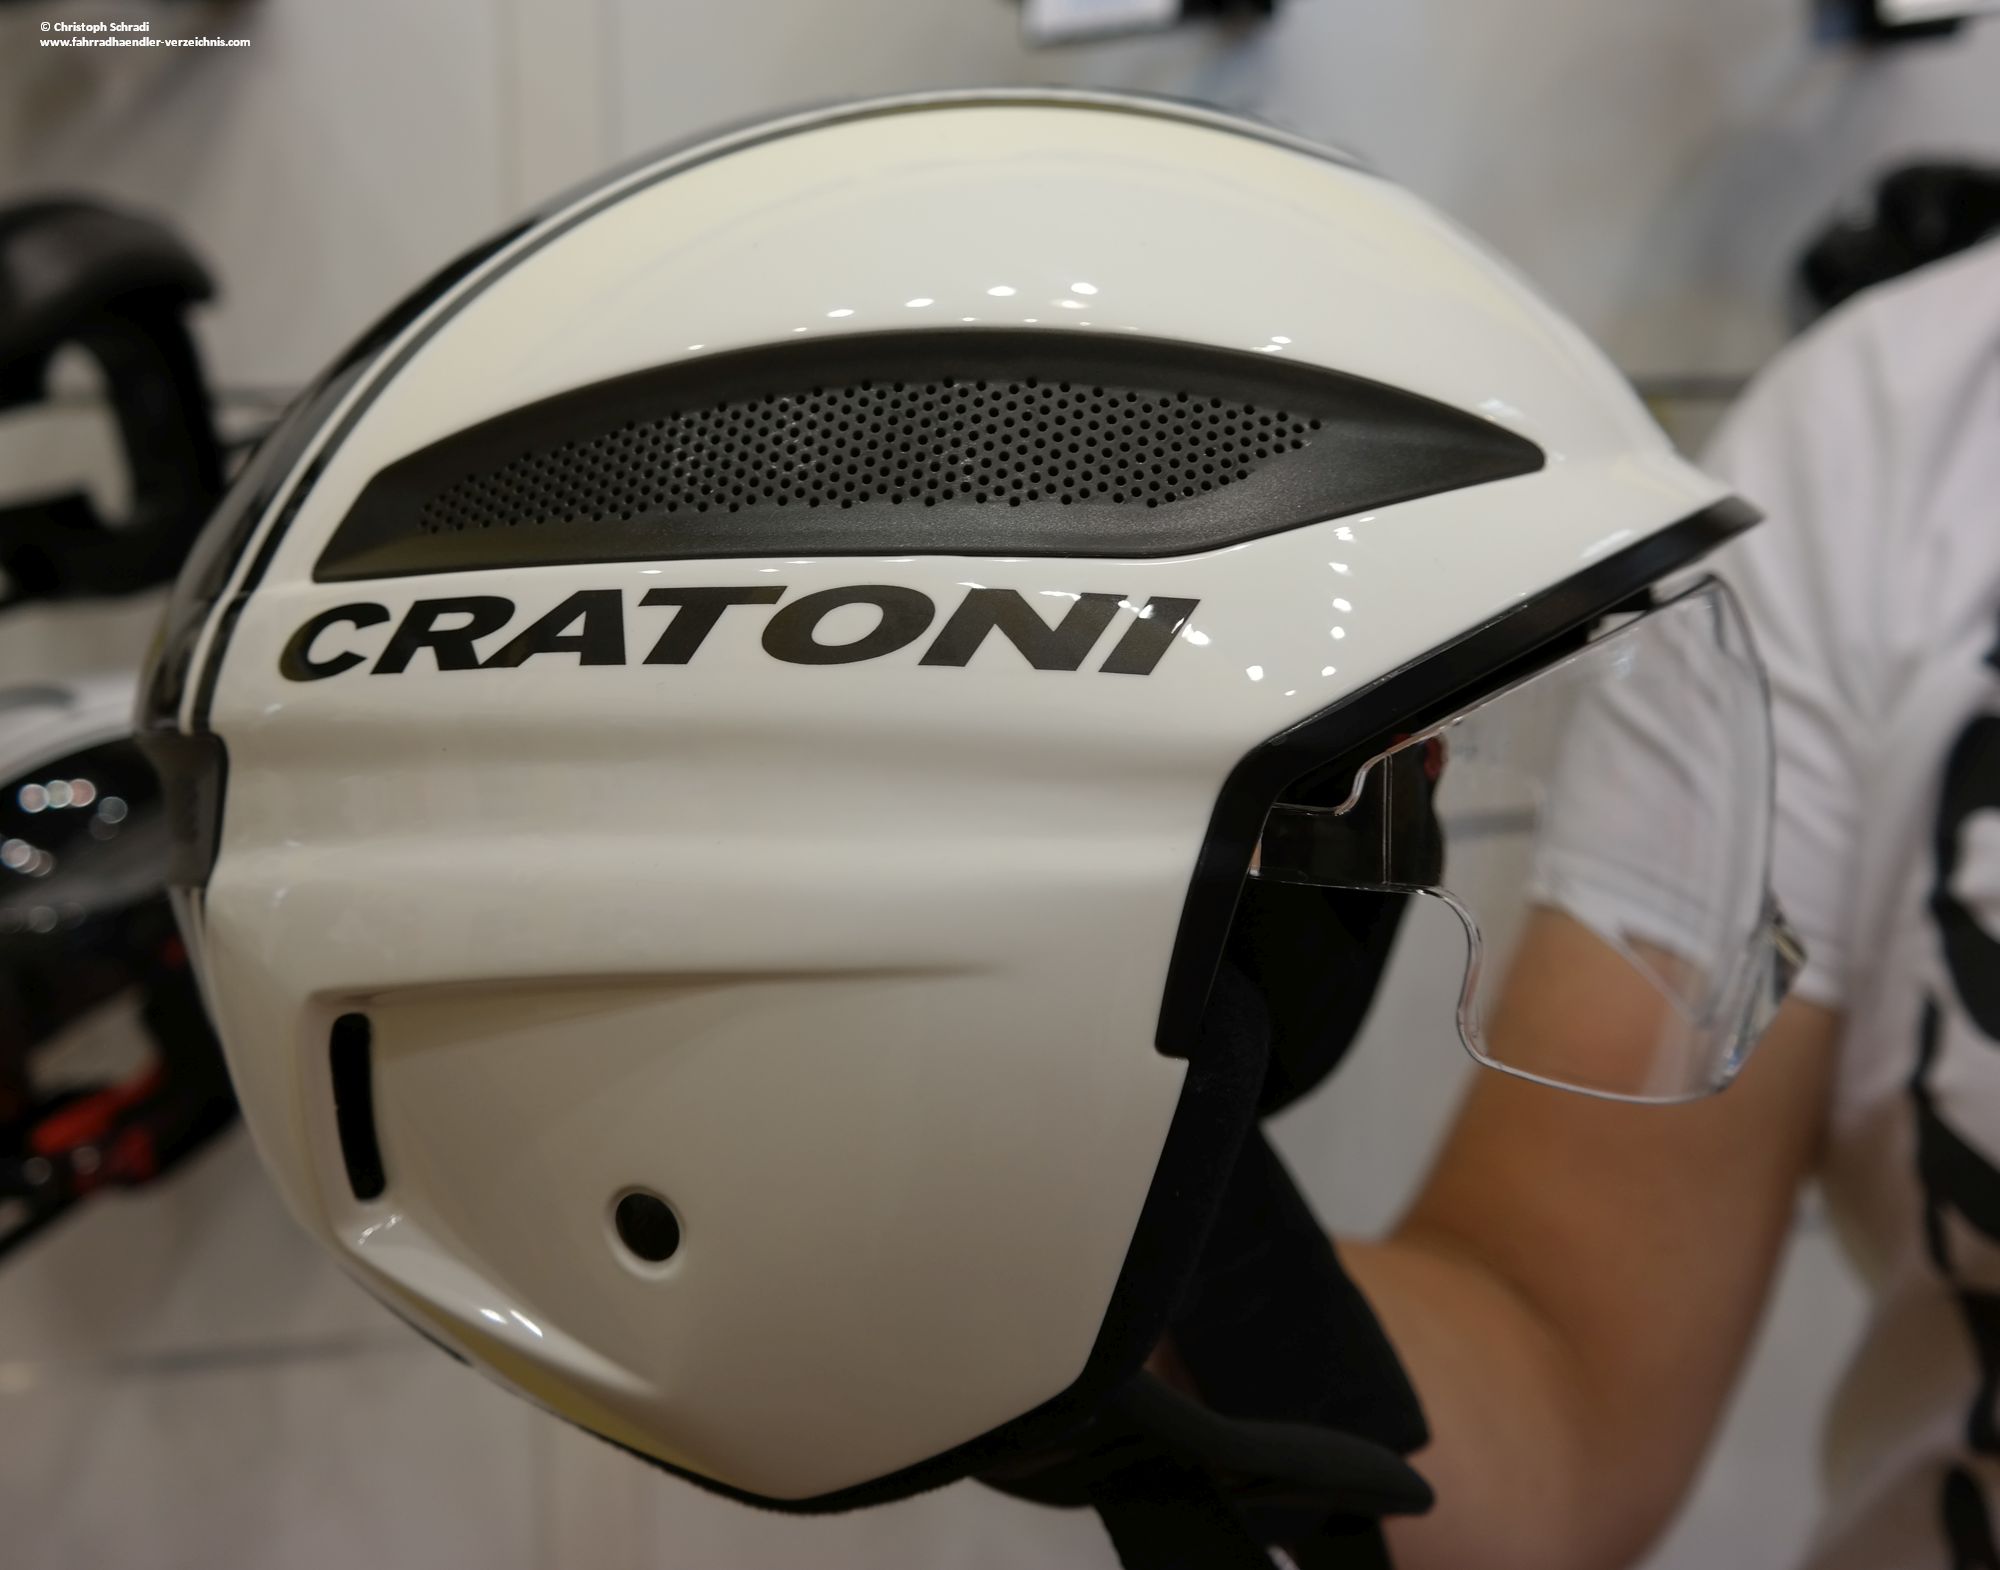 Cratoni brachte 2015 den ersten "echten" S-Pedelec Helm auf den Markt, welcher auch bei Geschwindigkeiten um die 45 km/h noch gut schützt